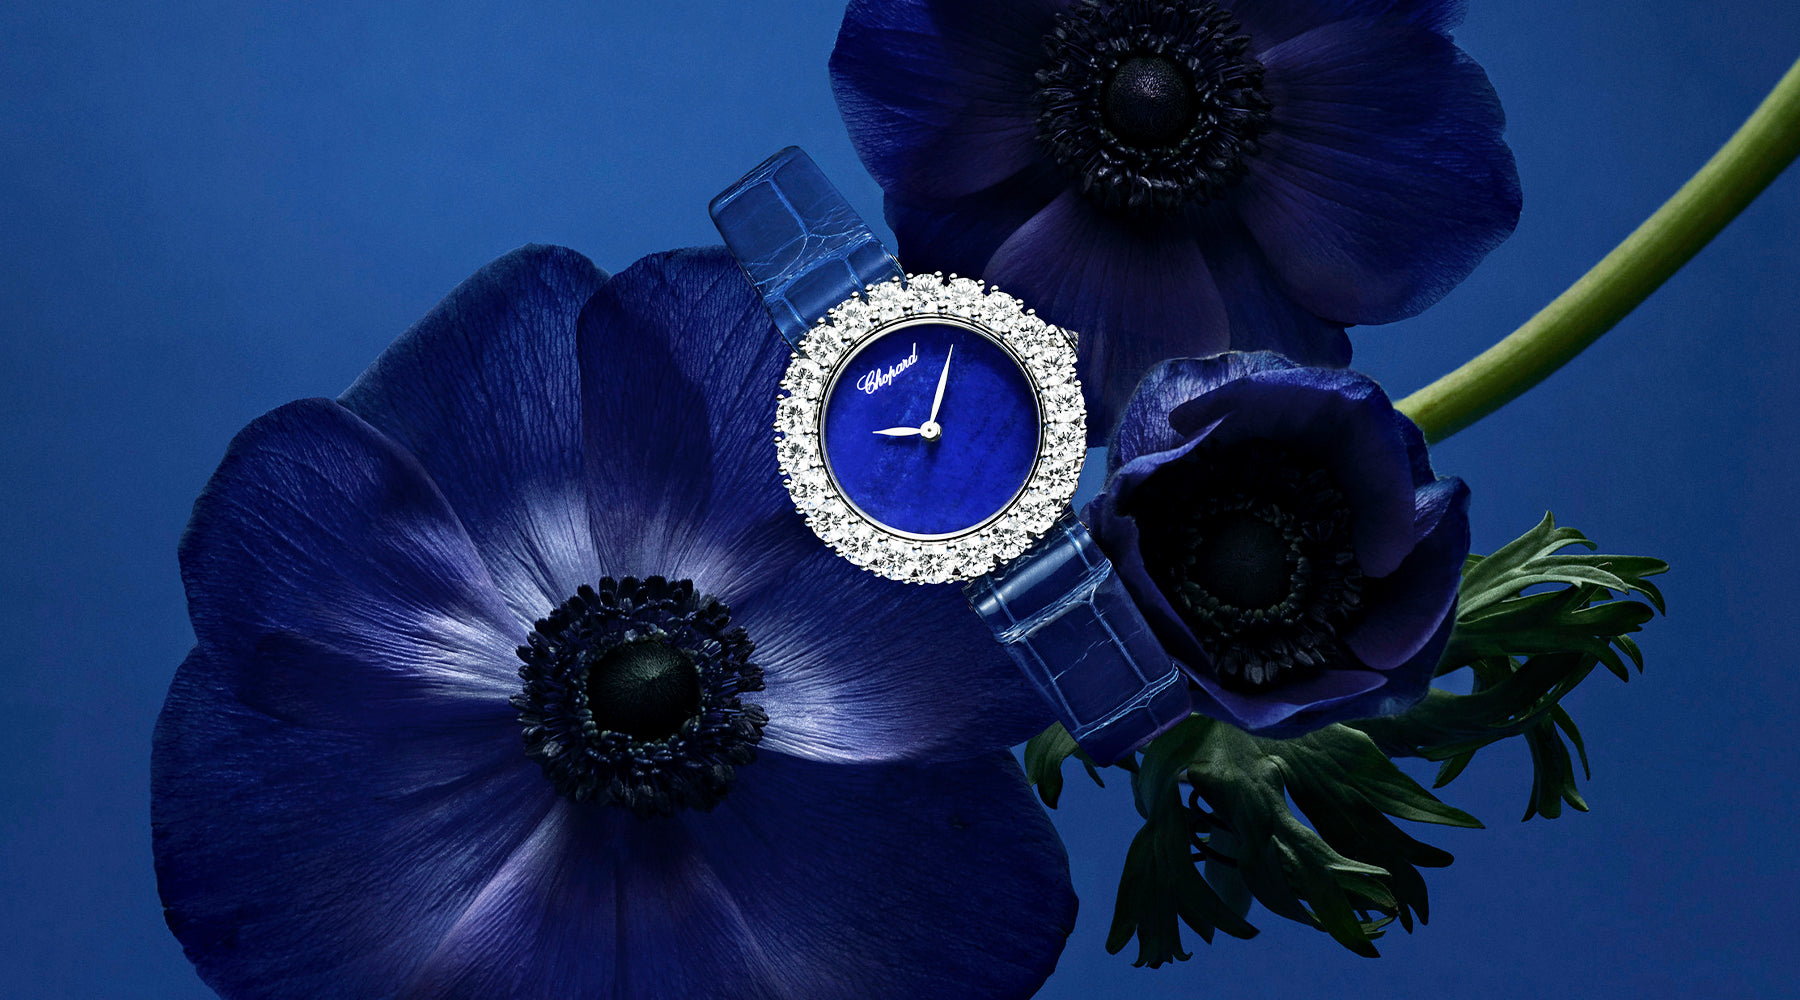 Blue Chopard Watch in Florals